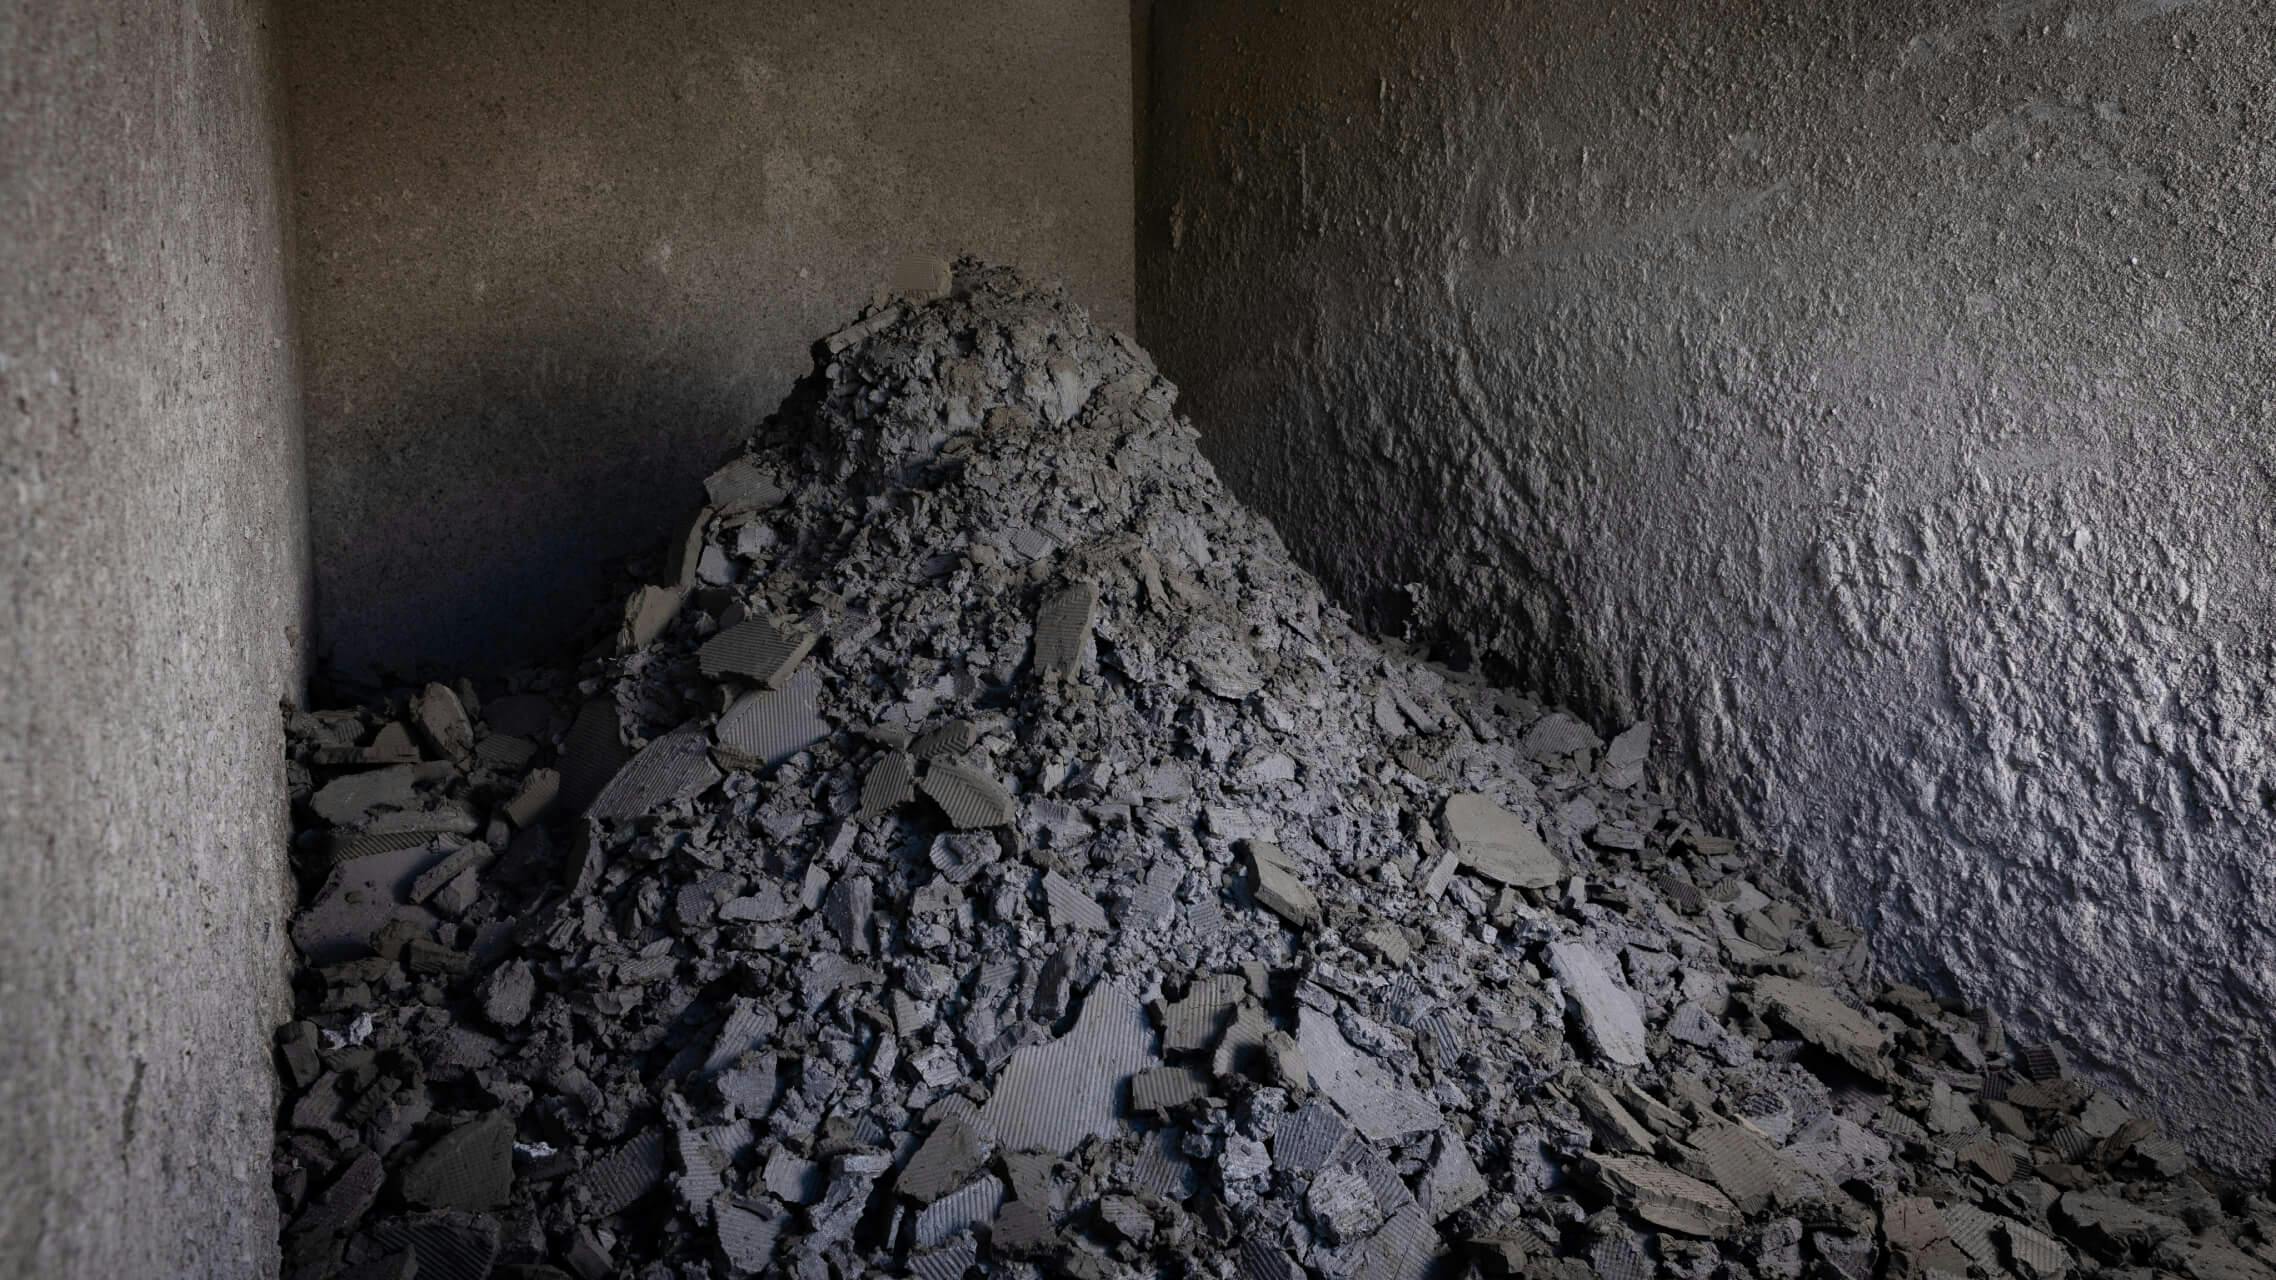 タケサイトの原料となる”生コンクリートスラッジ” 生コンクリート工場から大量に排出される廃棄物